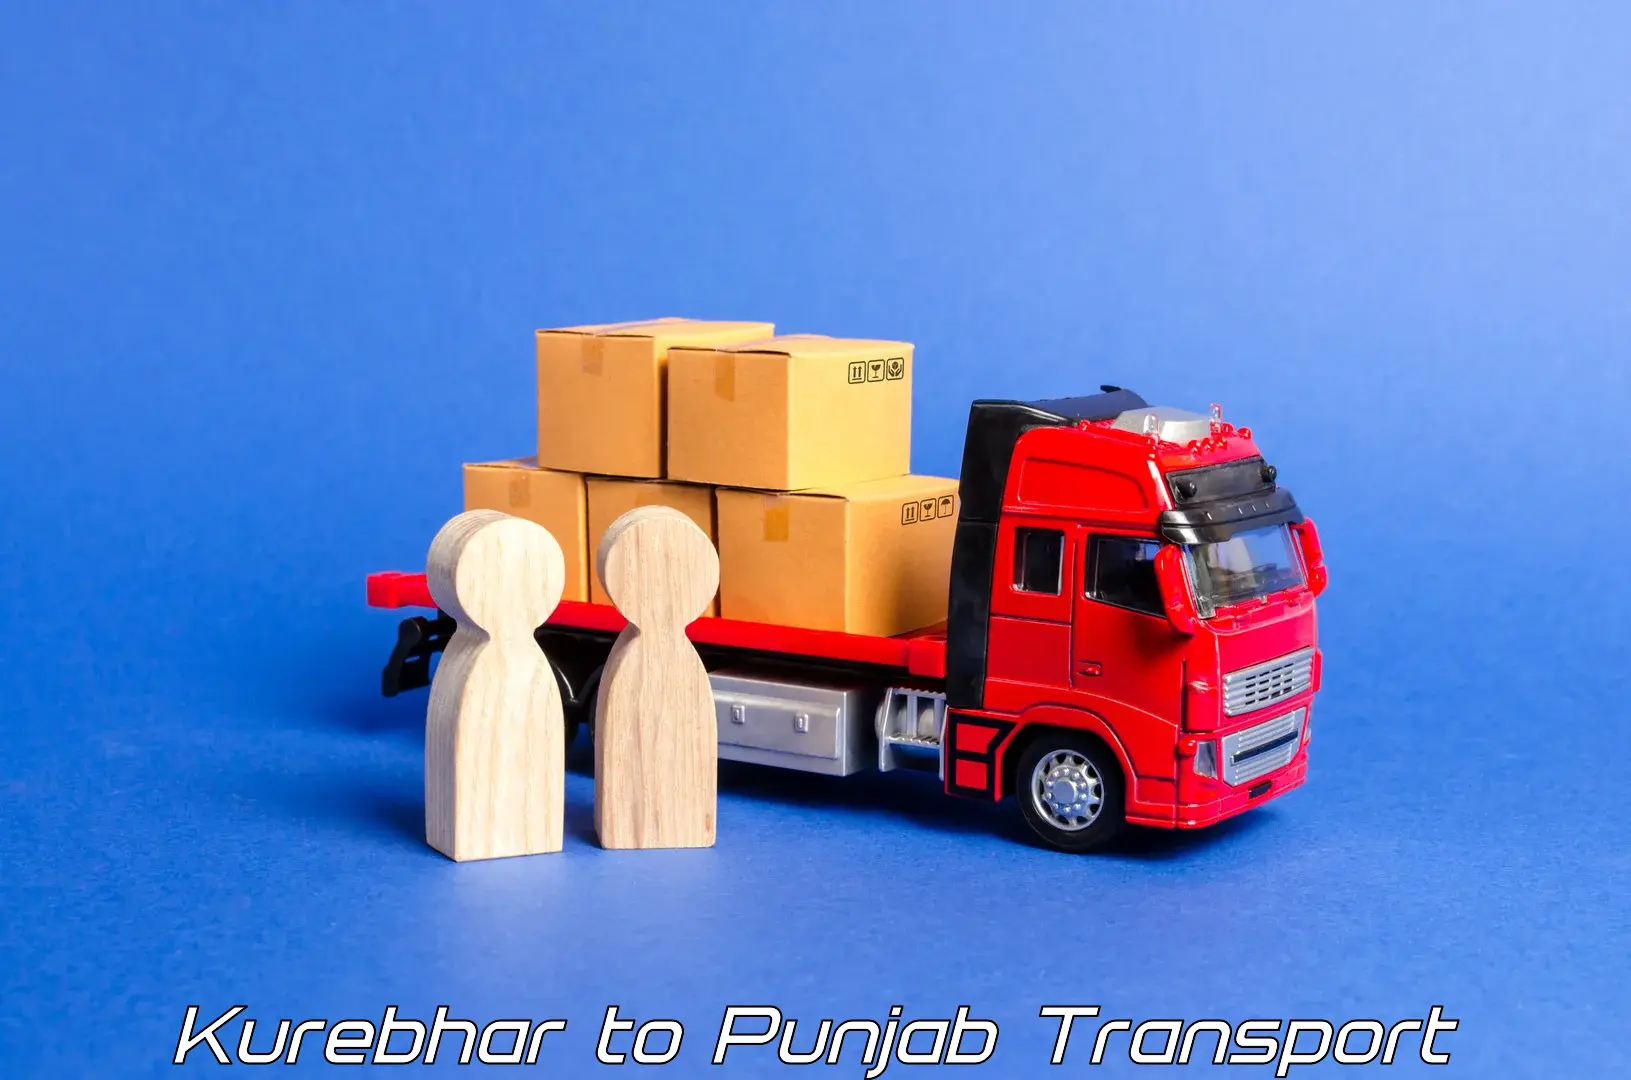 All India transport service Kurebhar to Bathinda